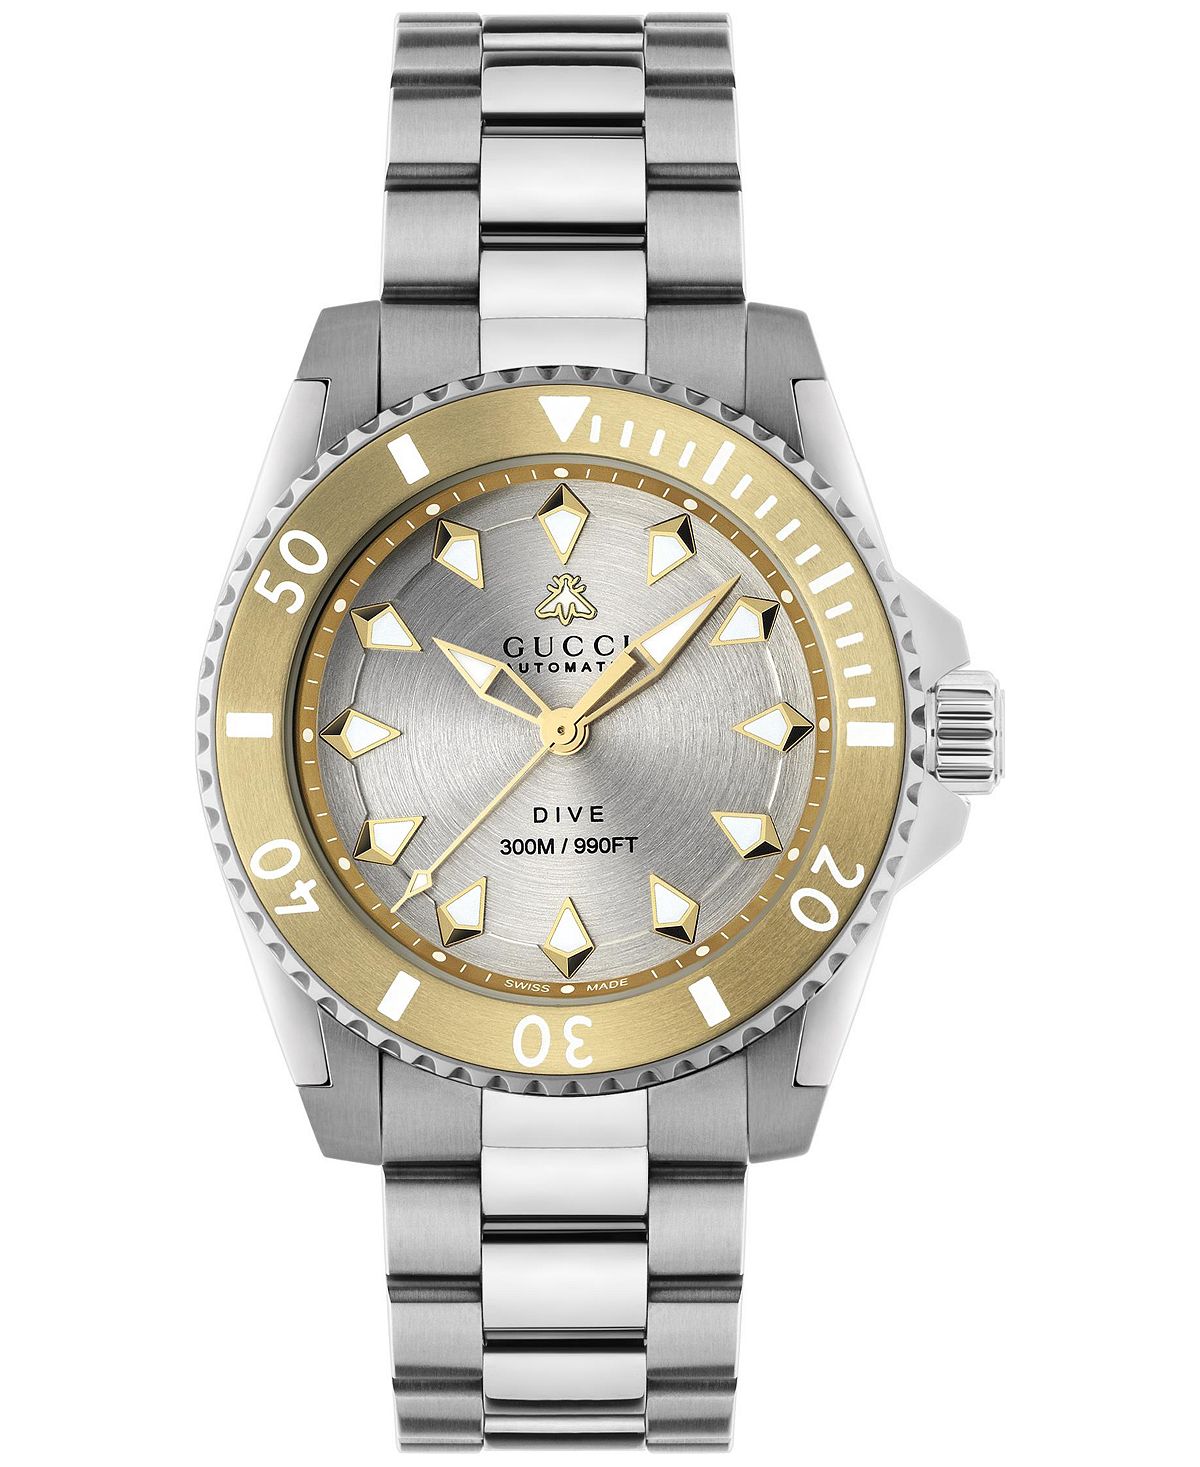 Мужские швейцарские автоматические часы для дайвинга с браслетом из нержавеющей стали, 40 мм Gucci